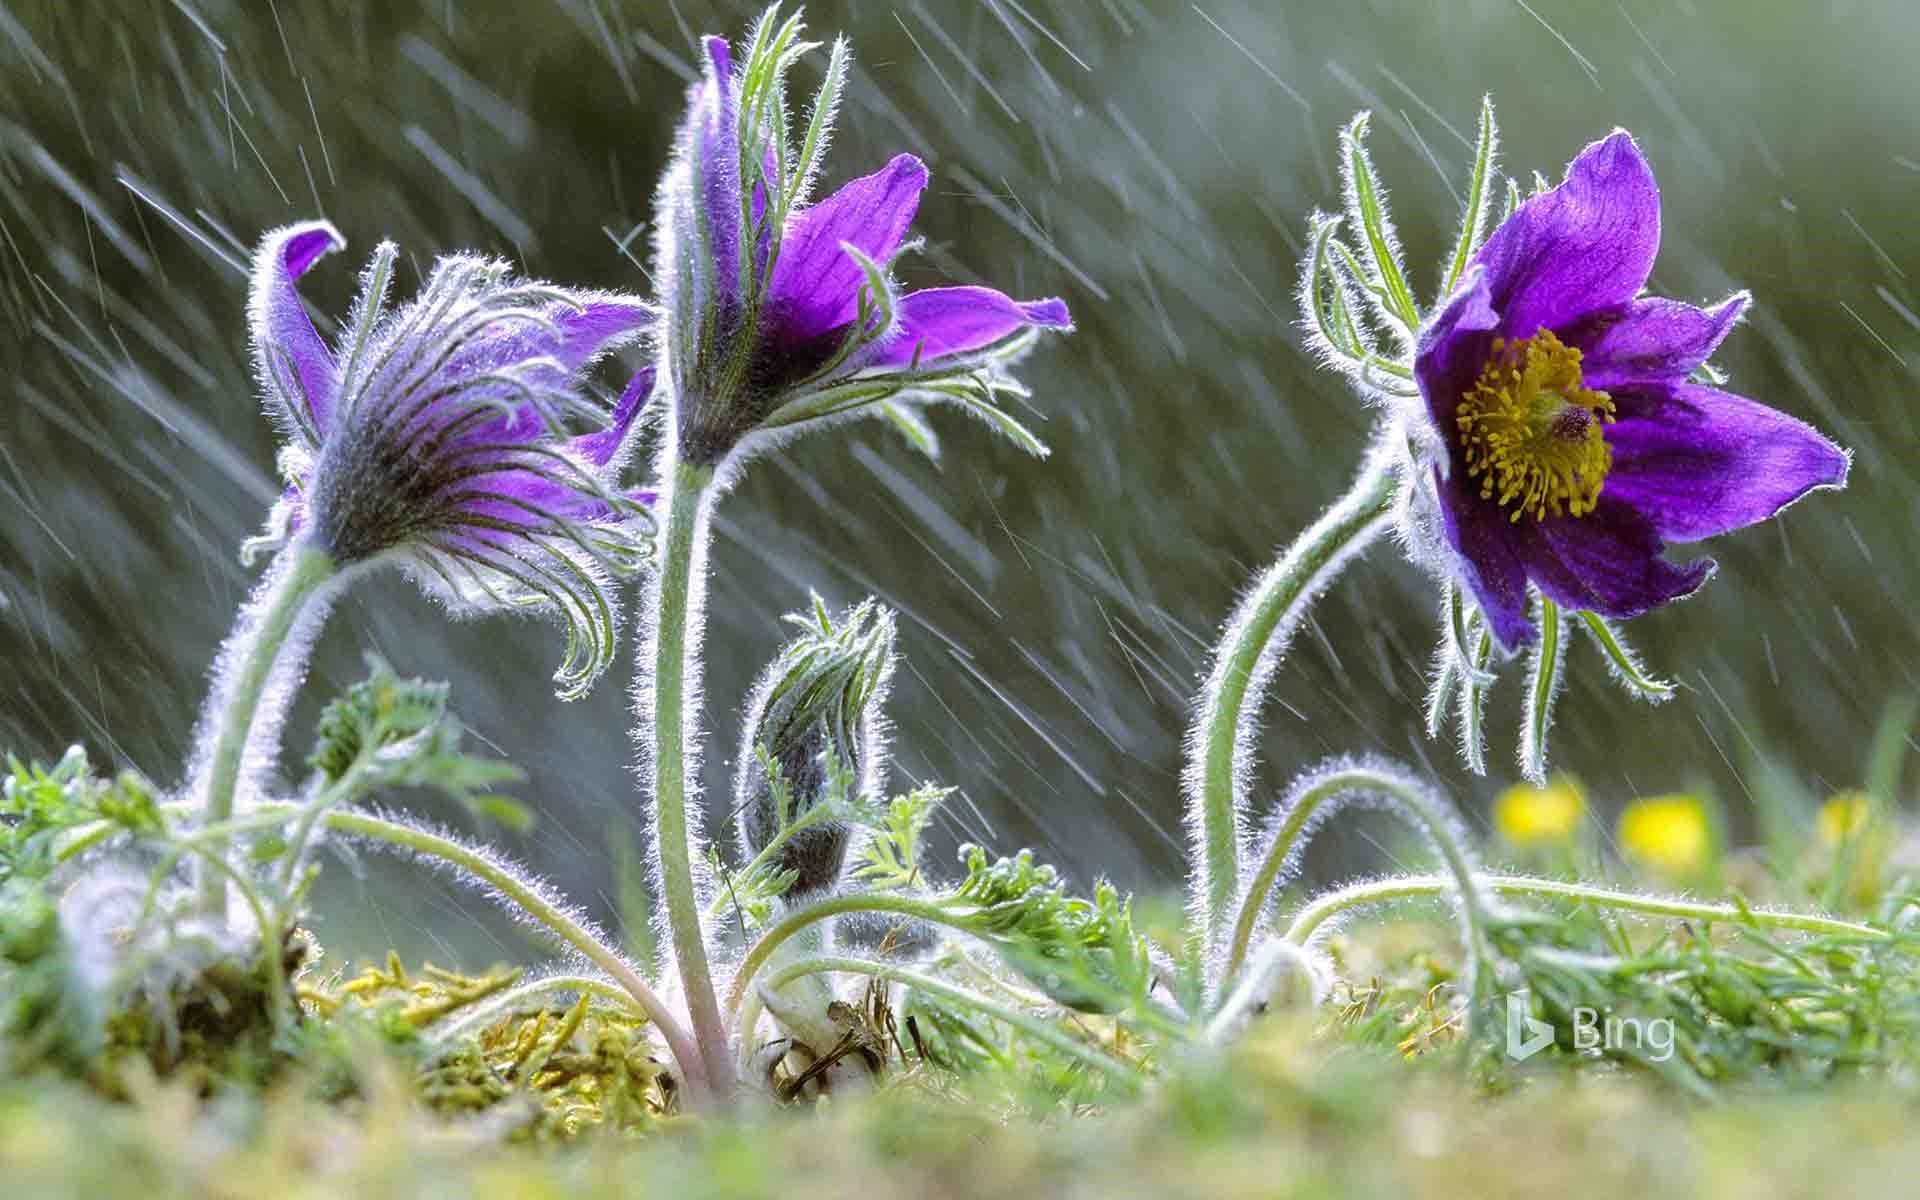 Pulsatilla vulgaris flowers in rain .sonurai.com